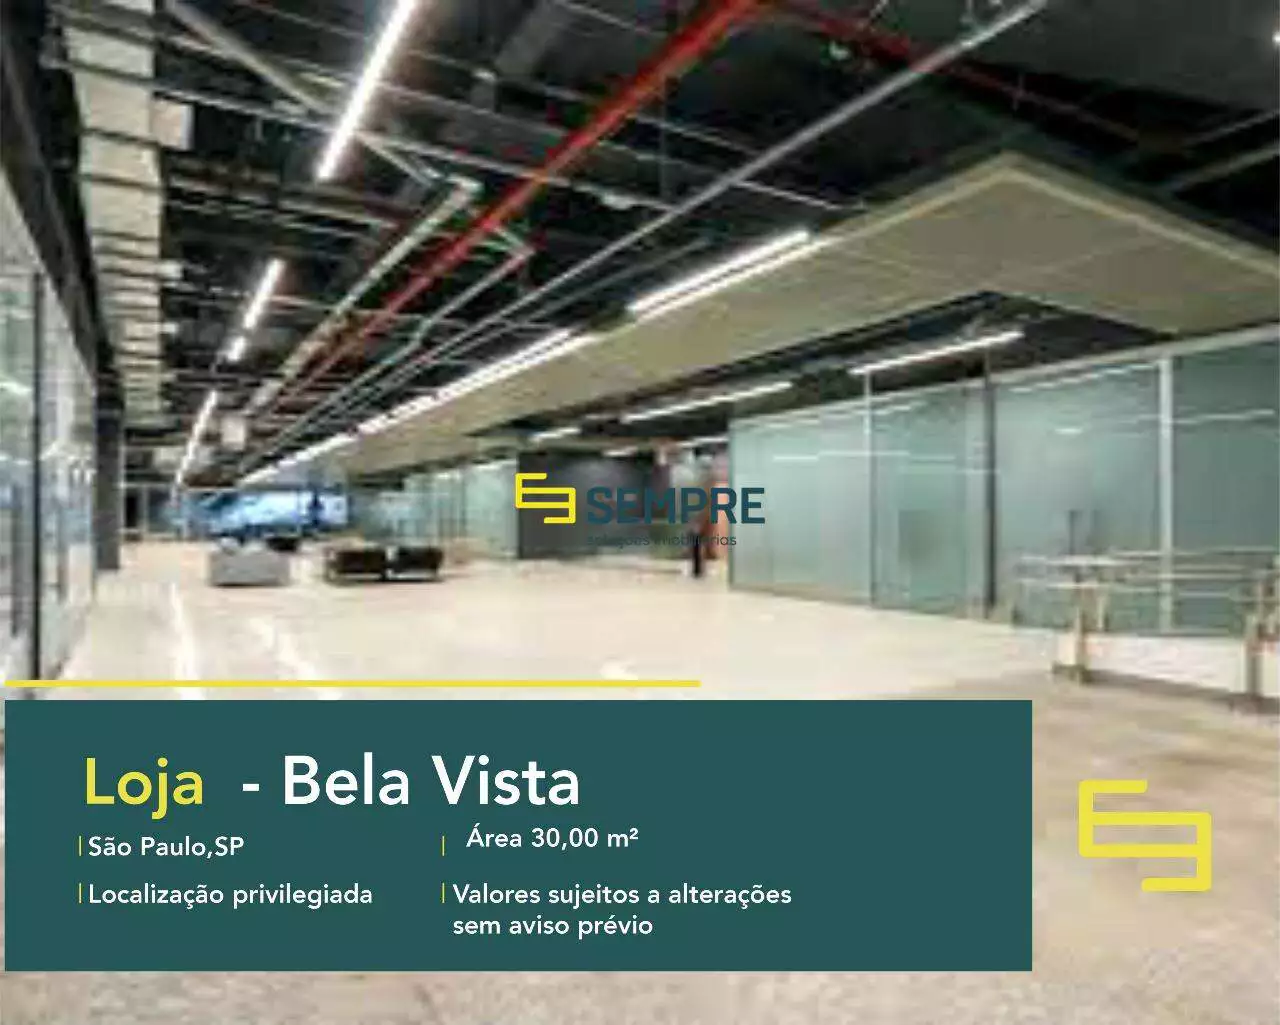 Aluguel de loja na cidade de São Paulo - Bela Vista, excelente localização. O estabelecimento comercial conta com área de 30,17 m².